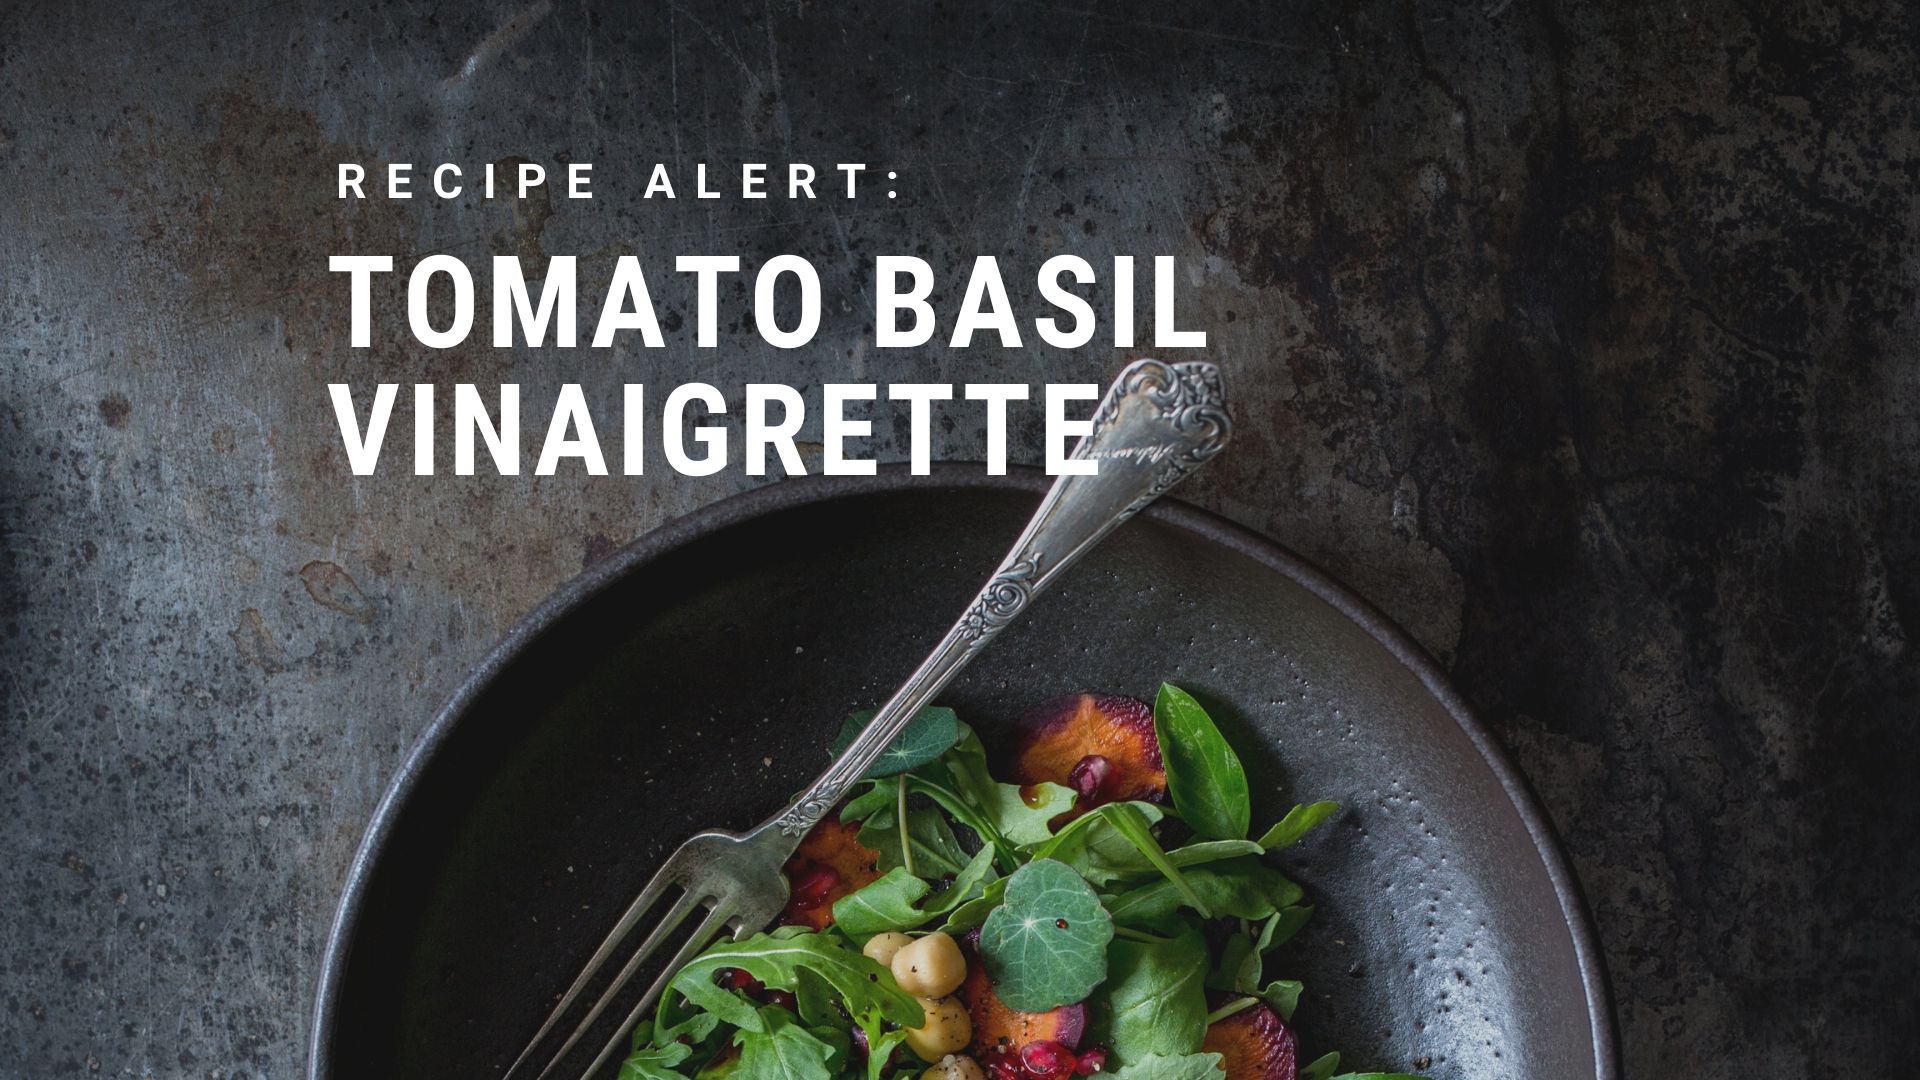 Tomato Basil Vinaigrette Recipe